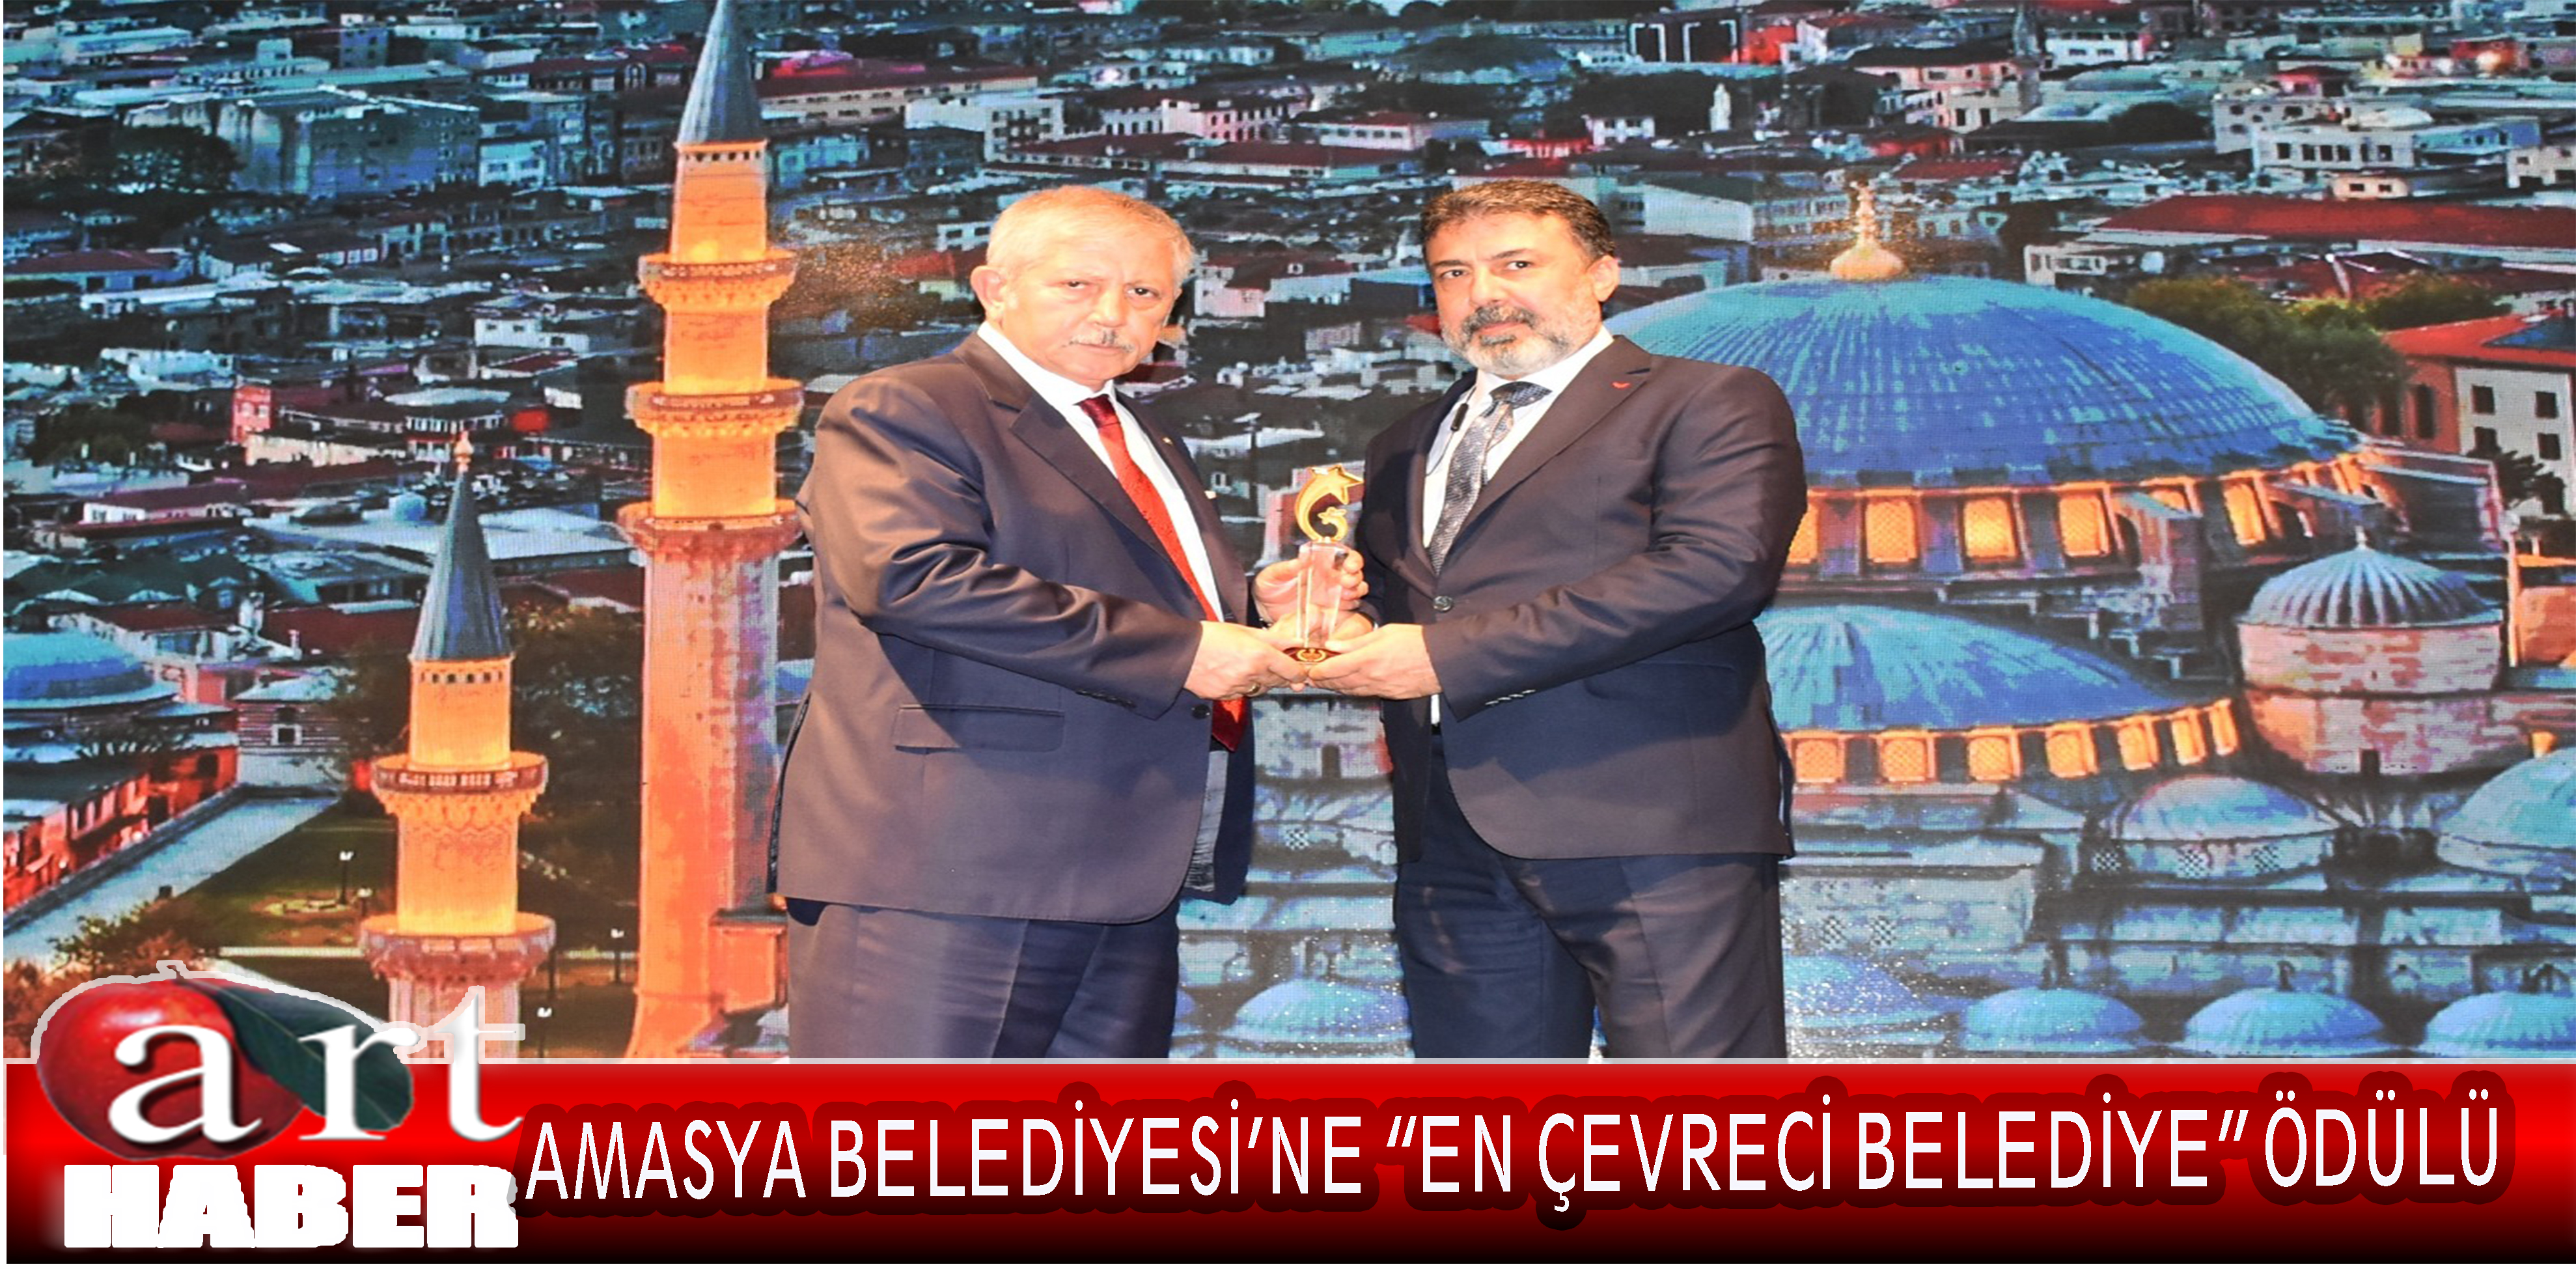 İstanbul Pendik’te düzenlenen “Afet ve Acil Durum Yönetimi 2021” zirvesine katılan Amasya Belediye Başkanı Mehmet Sarı, programda şehrin temizliği adına ‘En Çevreci Belediye’ ödülü almaya hak kazandı.